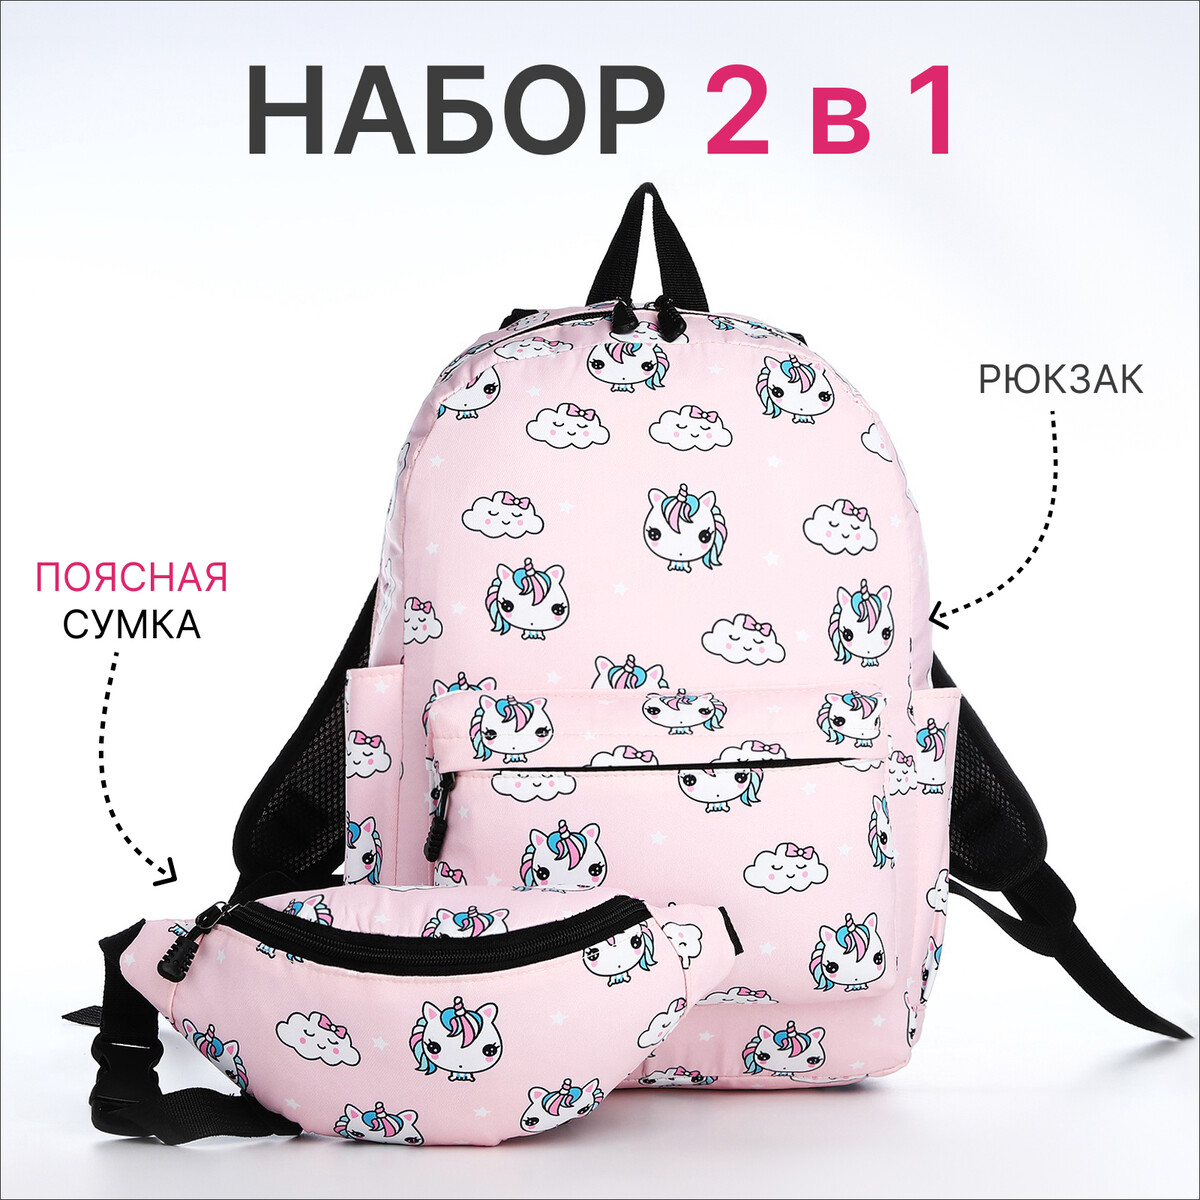 Рюкзак молодежный из текстиля на молнии, 3 кармана, поясная сумка, цвет розовый поясная сумка для бега на молнии розовый